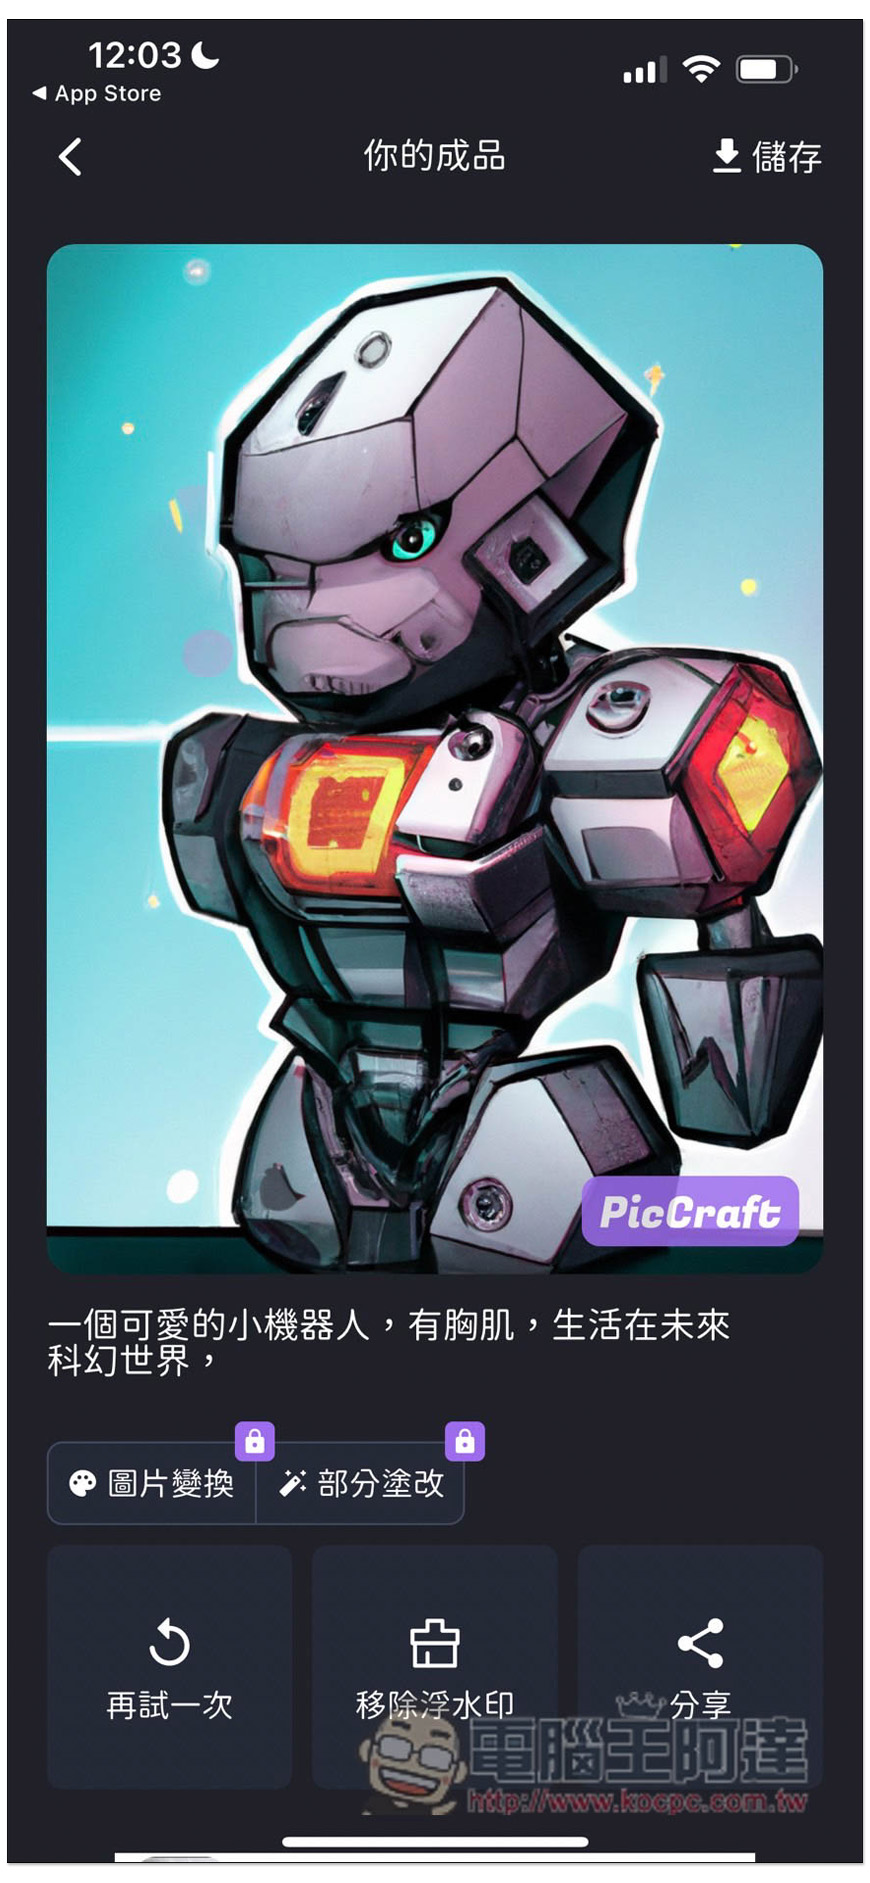 PicCraft 一款中文支援性高的 AI 繪圖免費 App，多達 16 種風格選擇 - 電腦王阿達